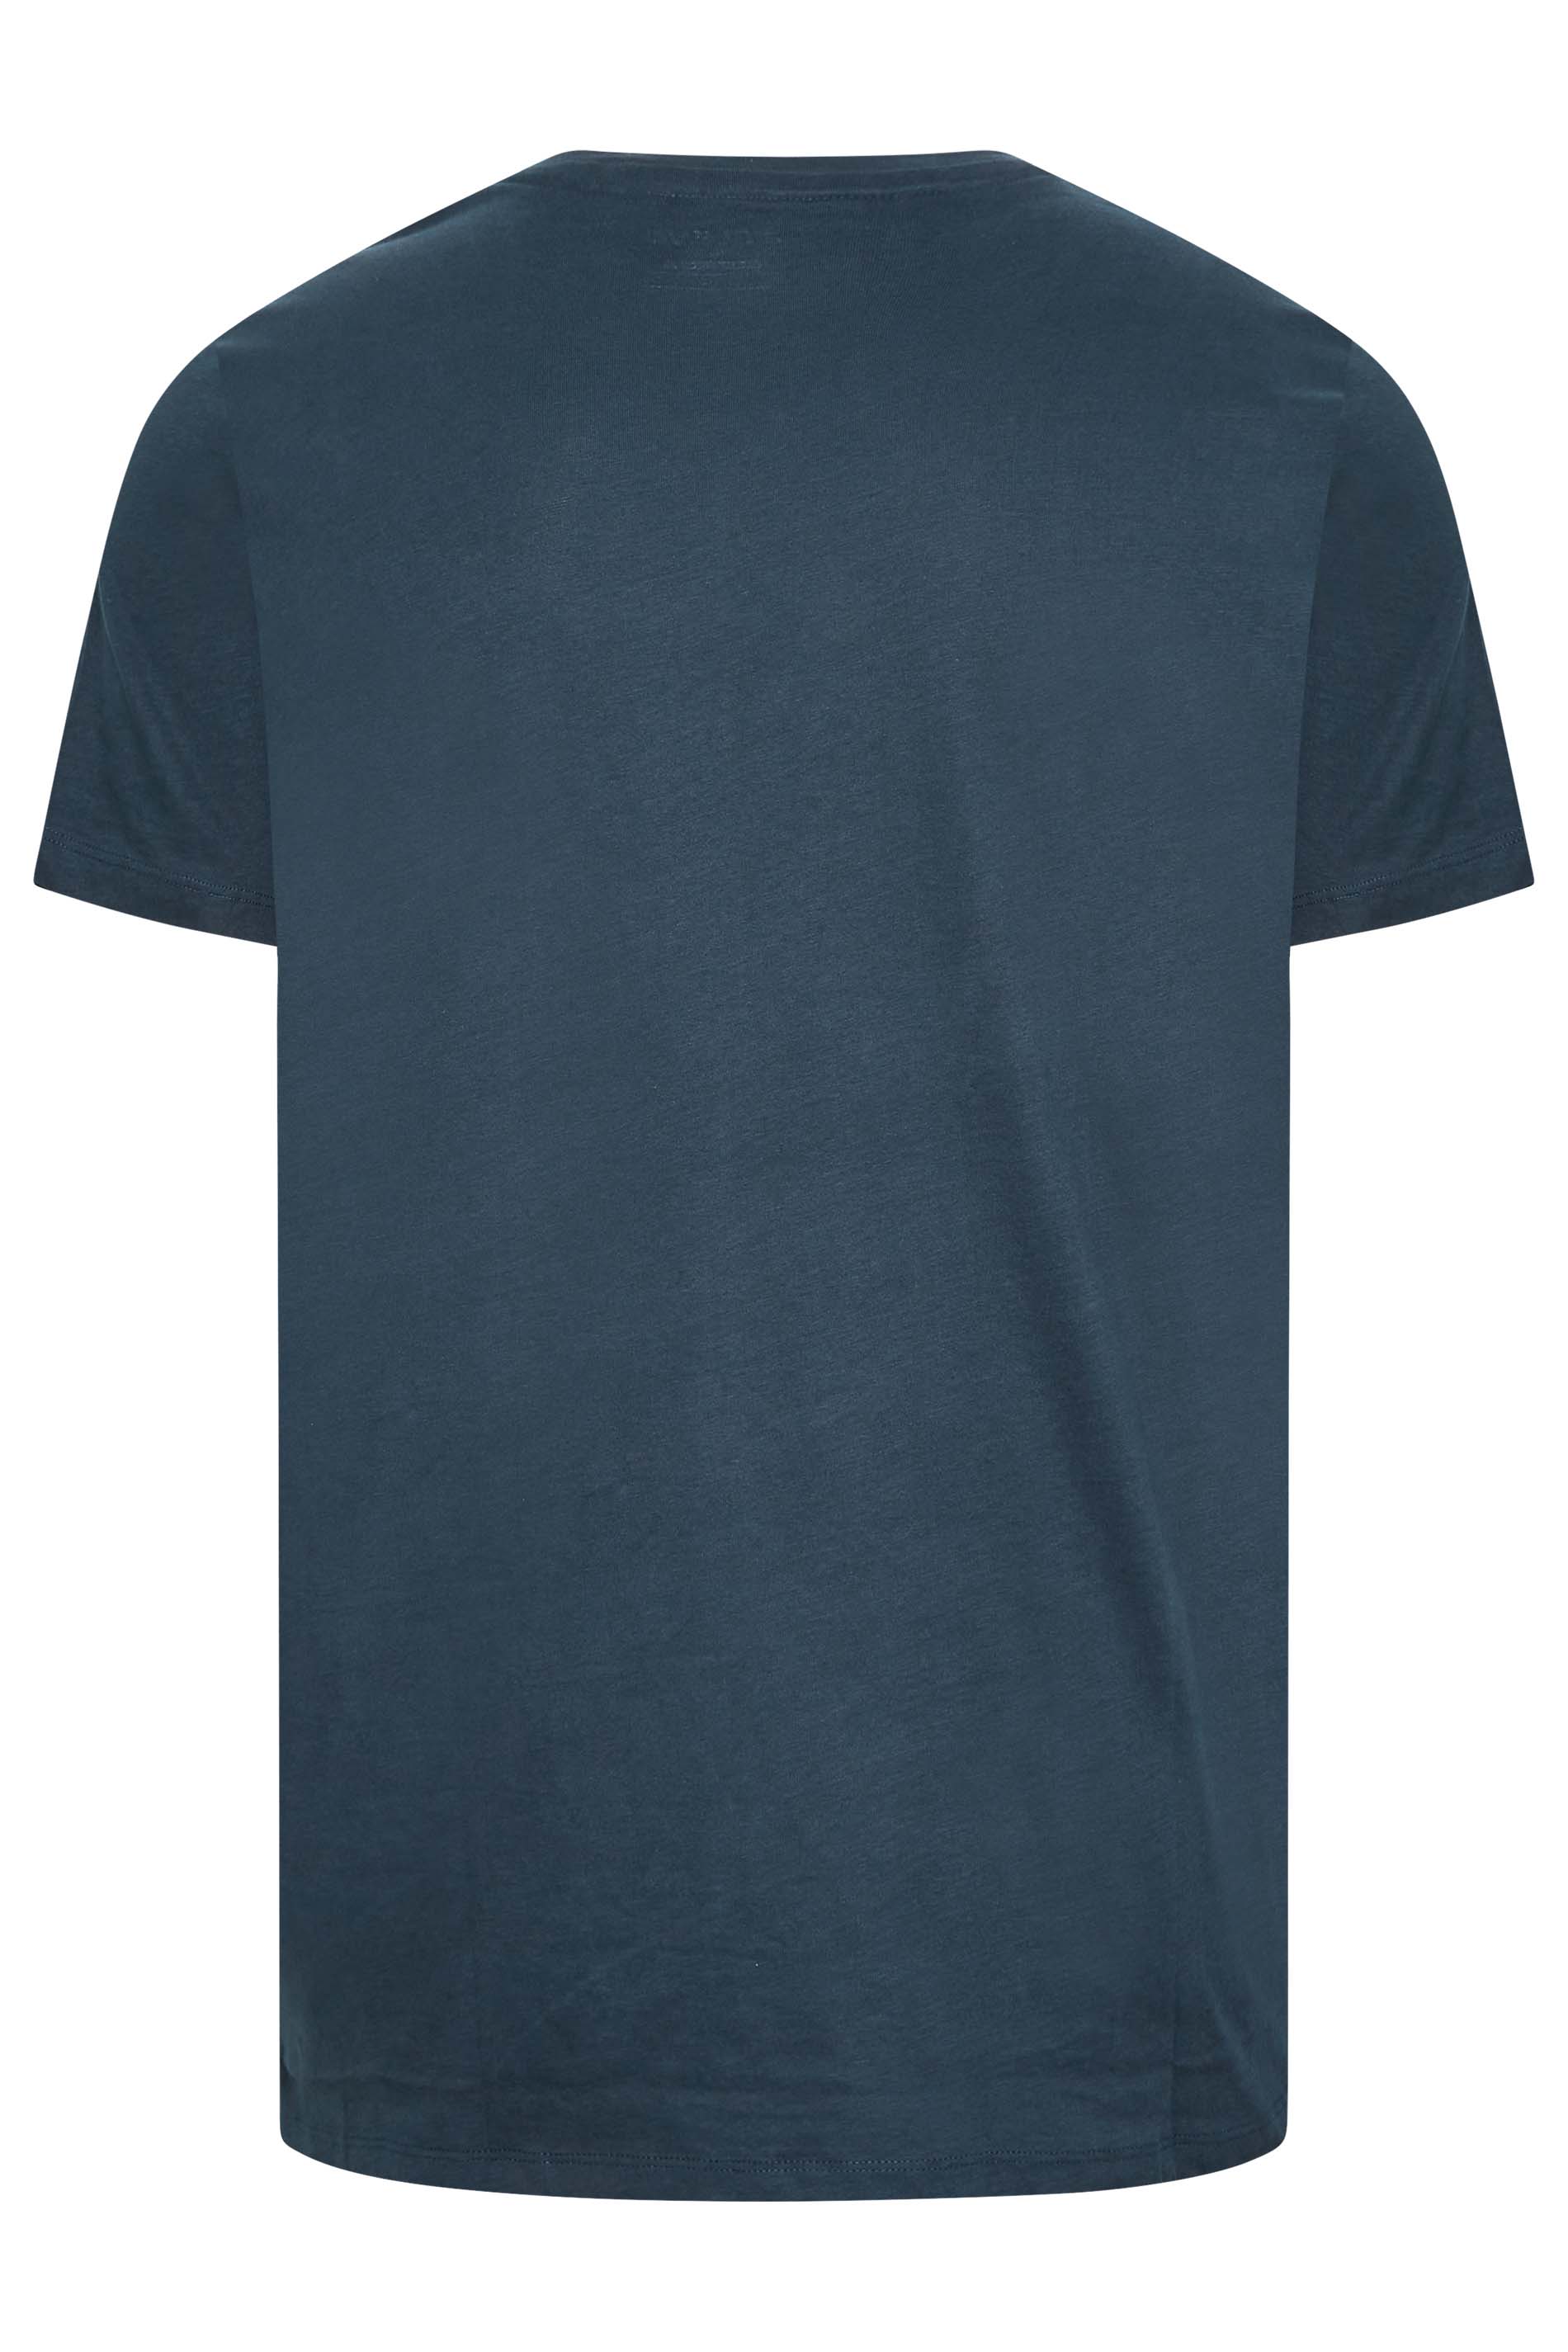 BLEND Big & Tall Navy Blue Pocket Print T-Shirt | BadRhino